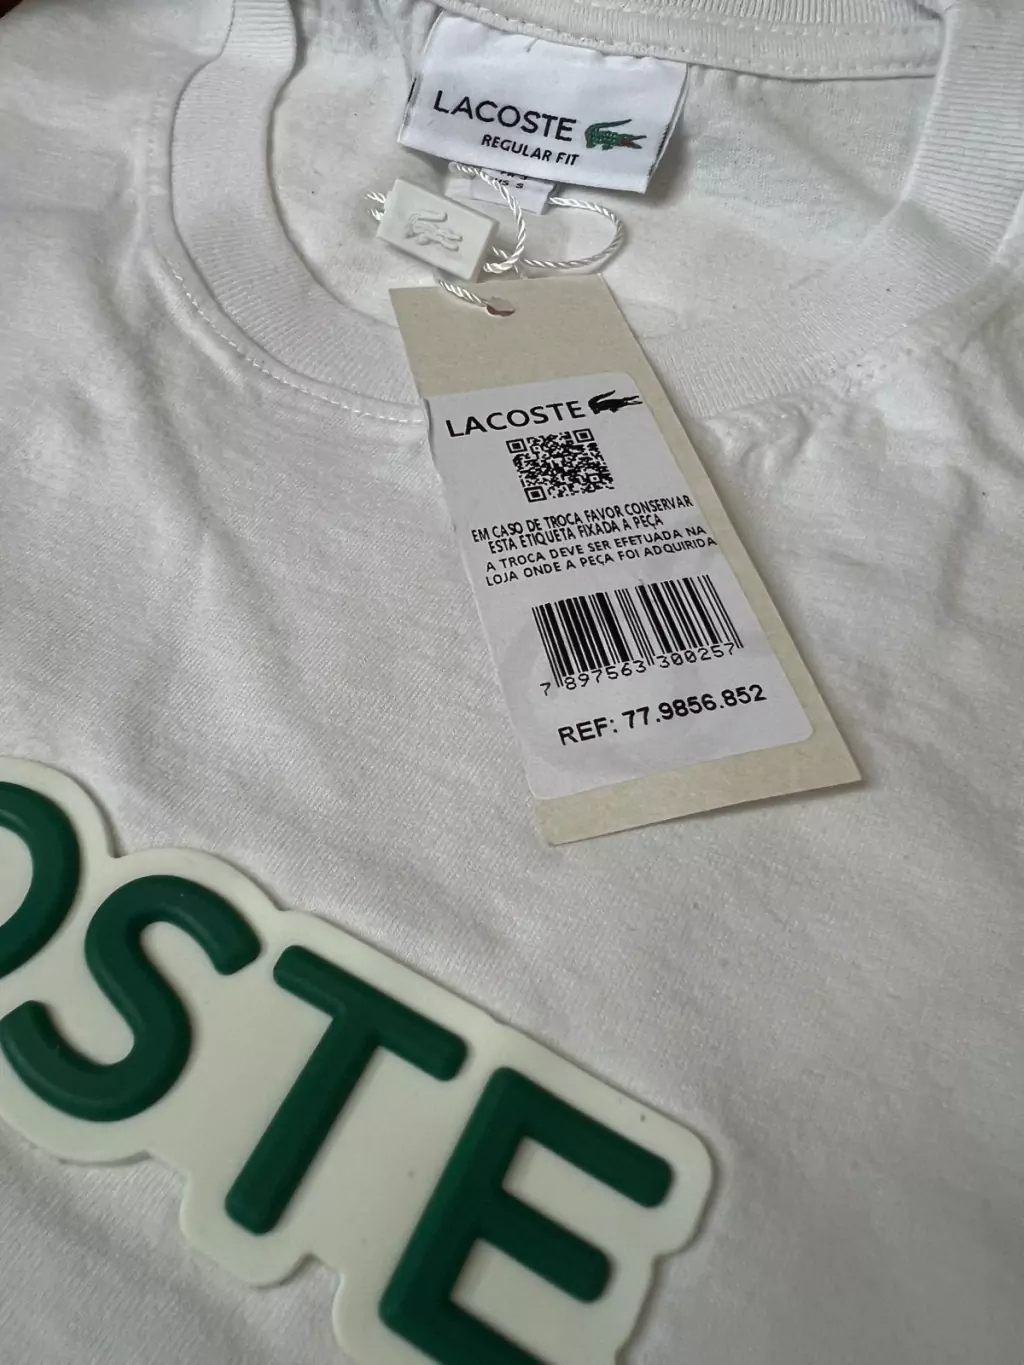 Camiseta Peruana Cotton Lacoste 004 - Site das Marcas